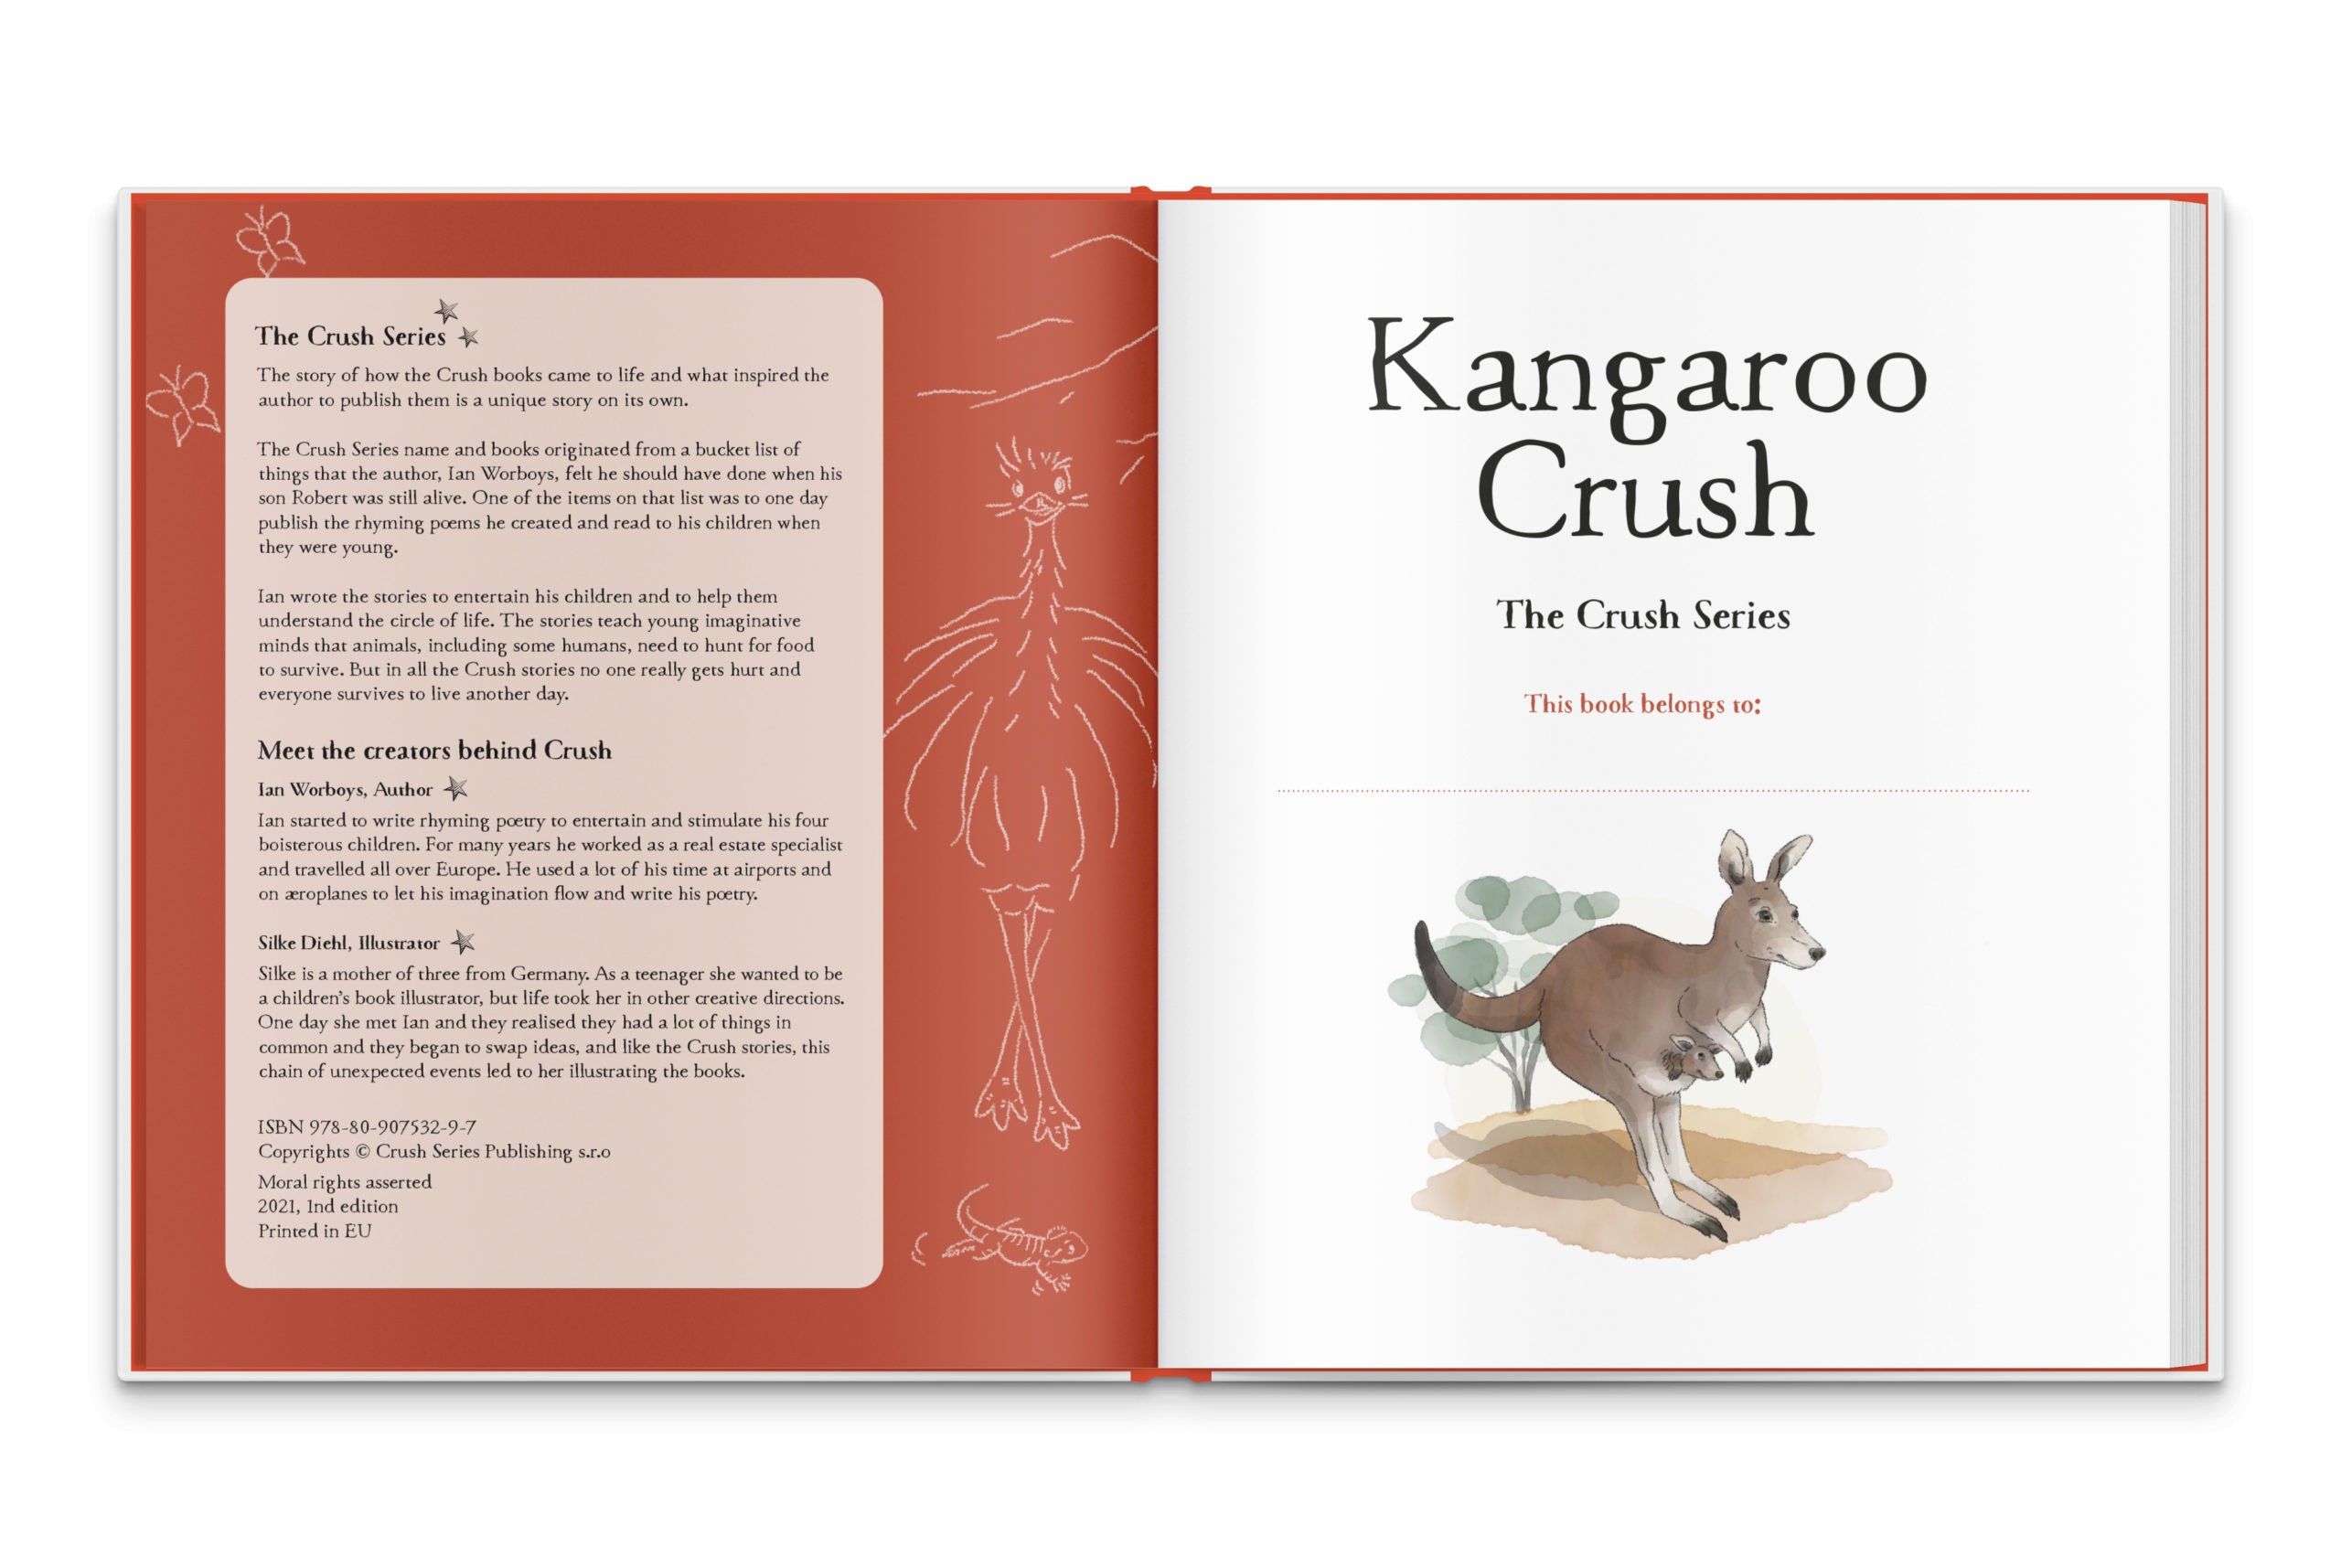 The Crush Series Kangaroo Crush (Travel Edition)